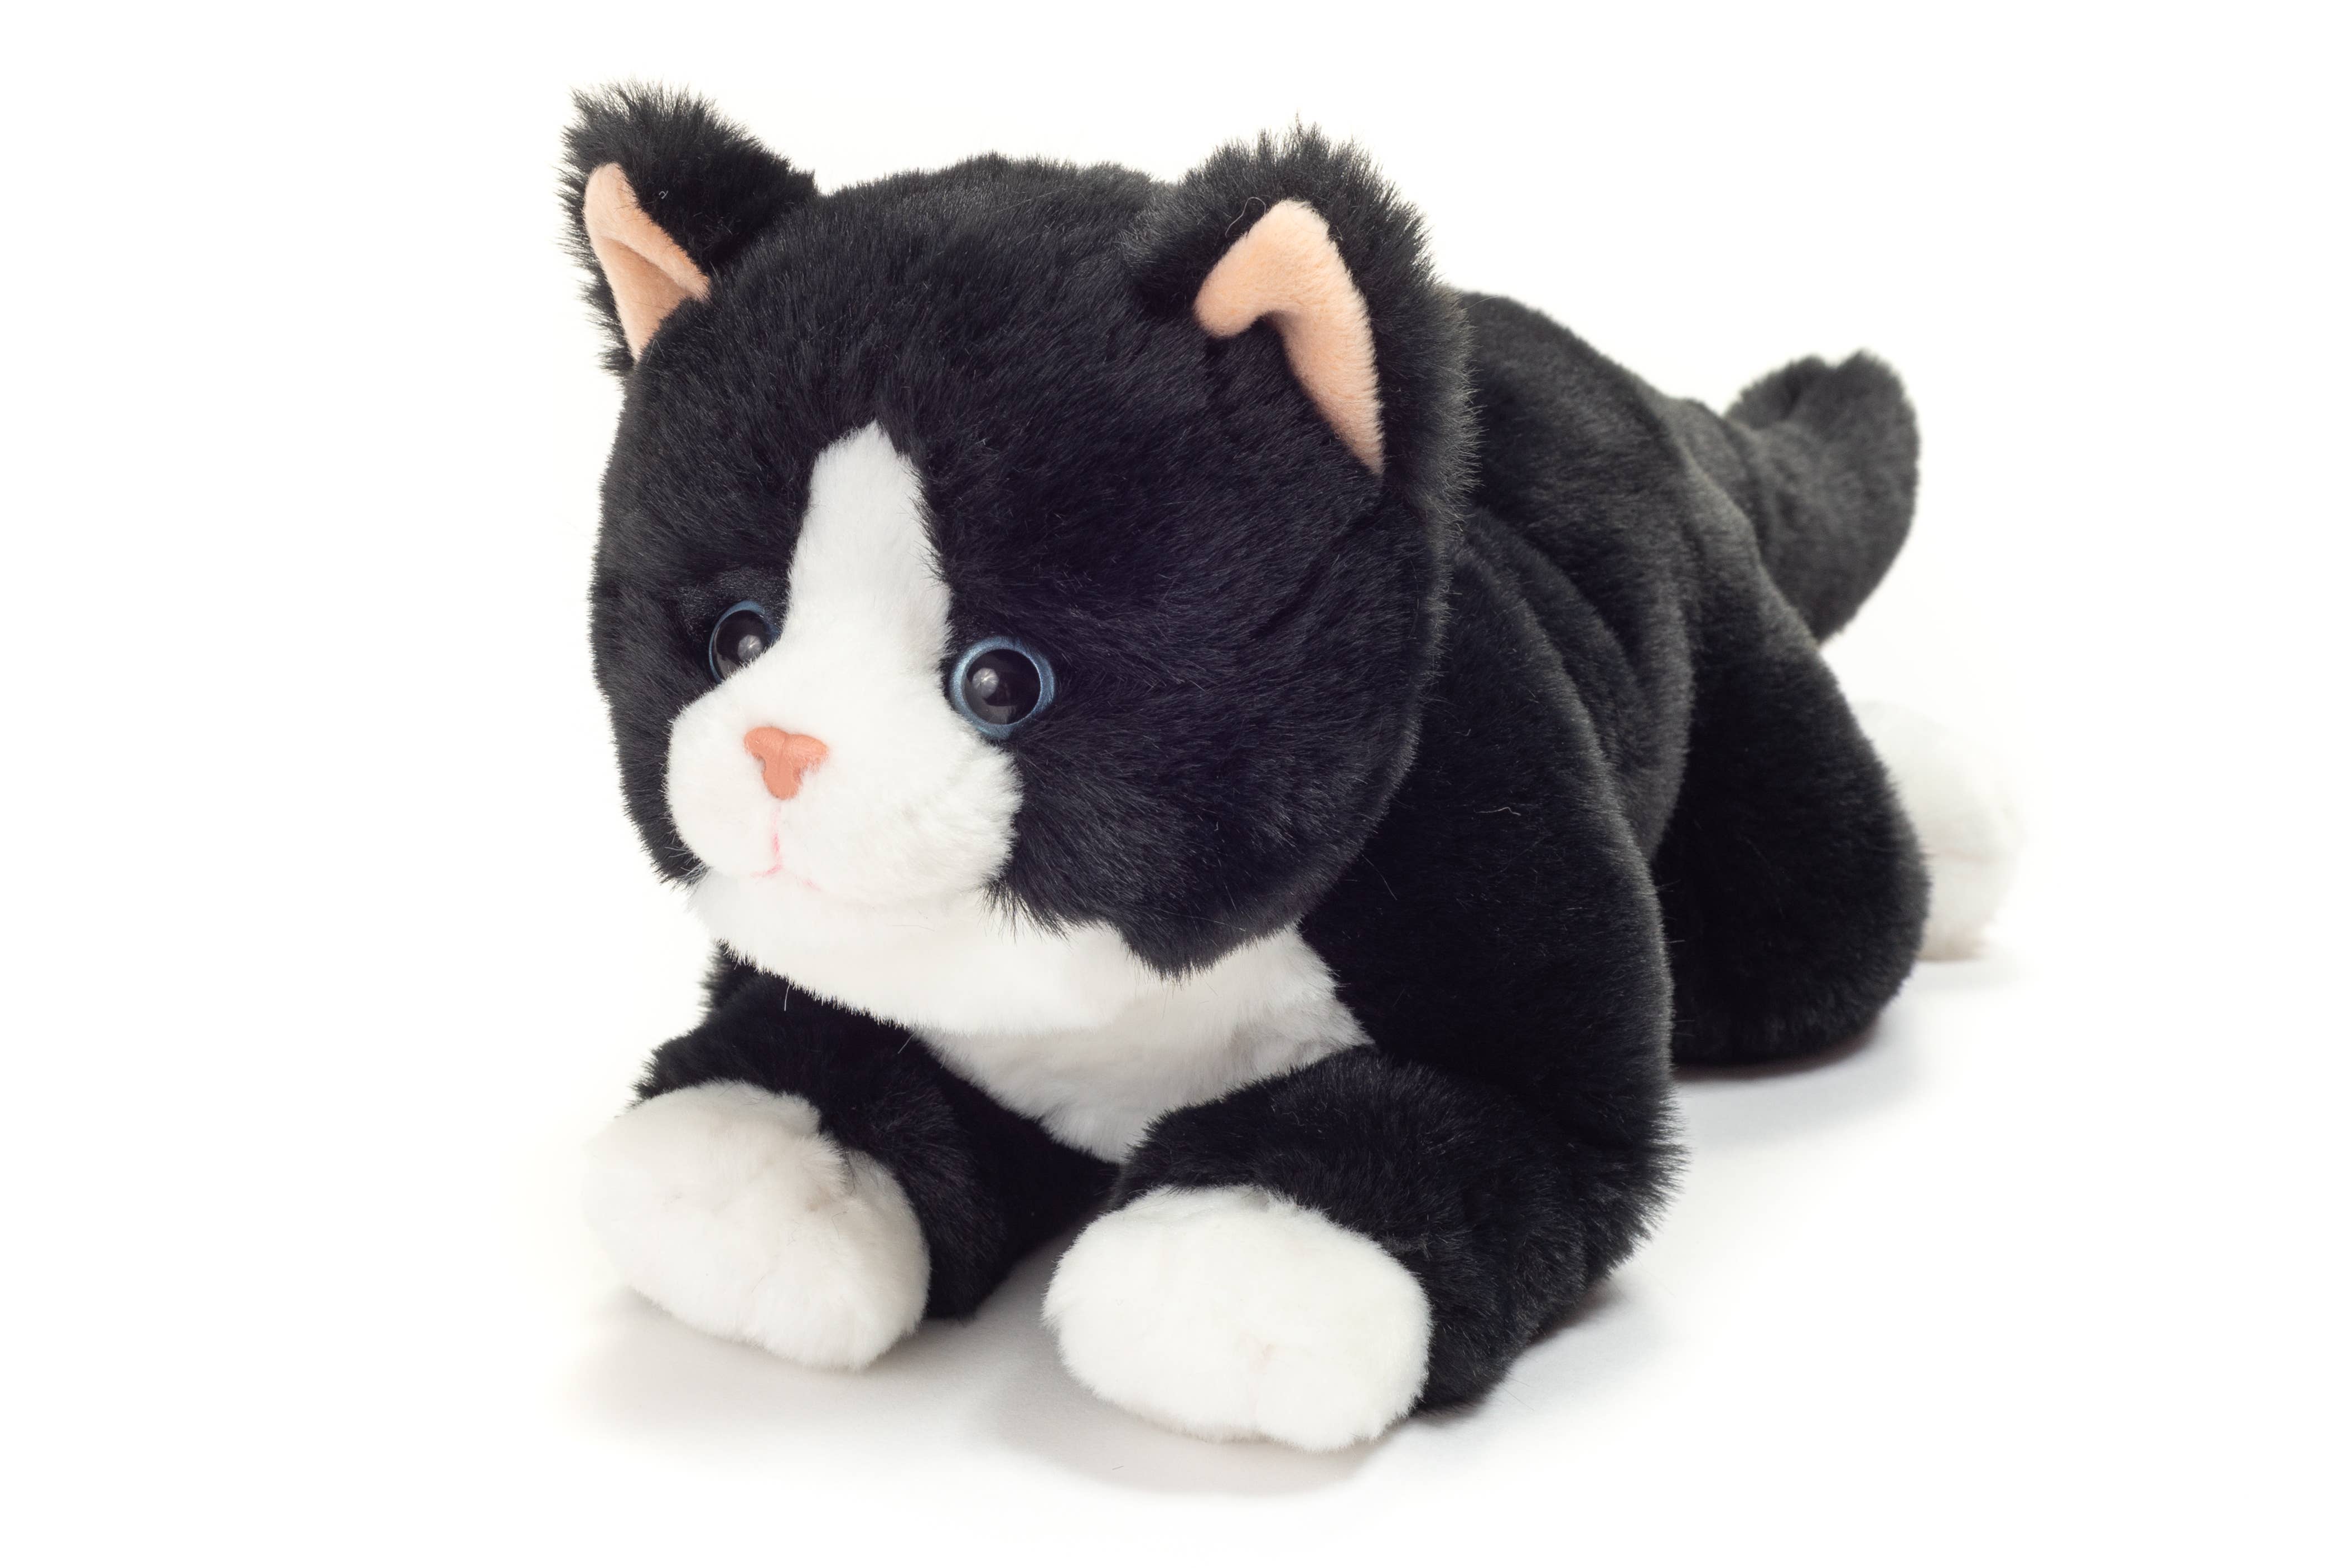 Floppy Tuxedo Black and White Kitty Cat 30 cm - plush toy - stuffed toy